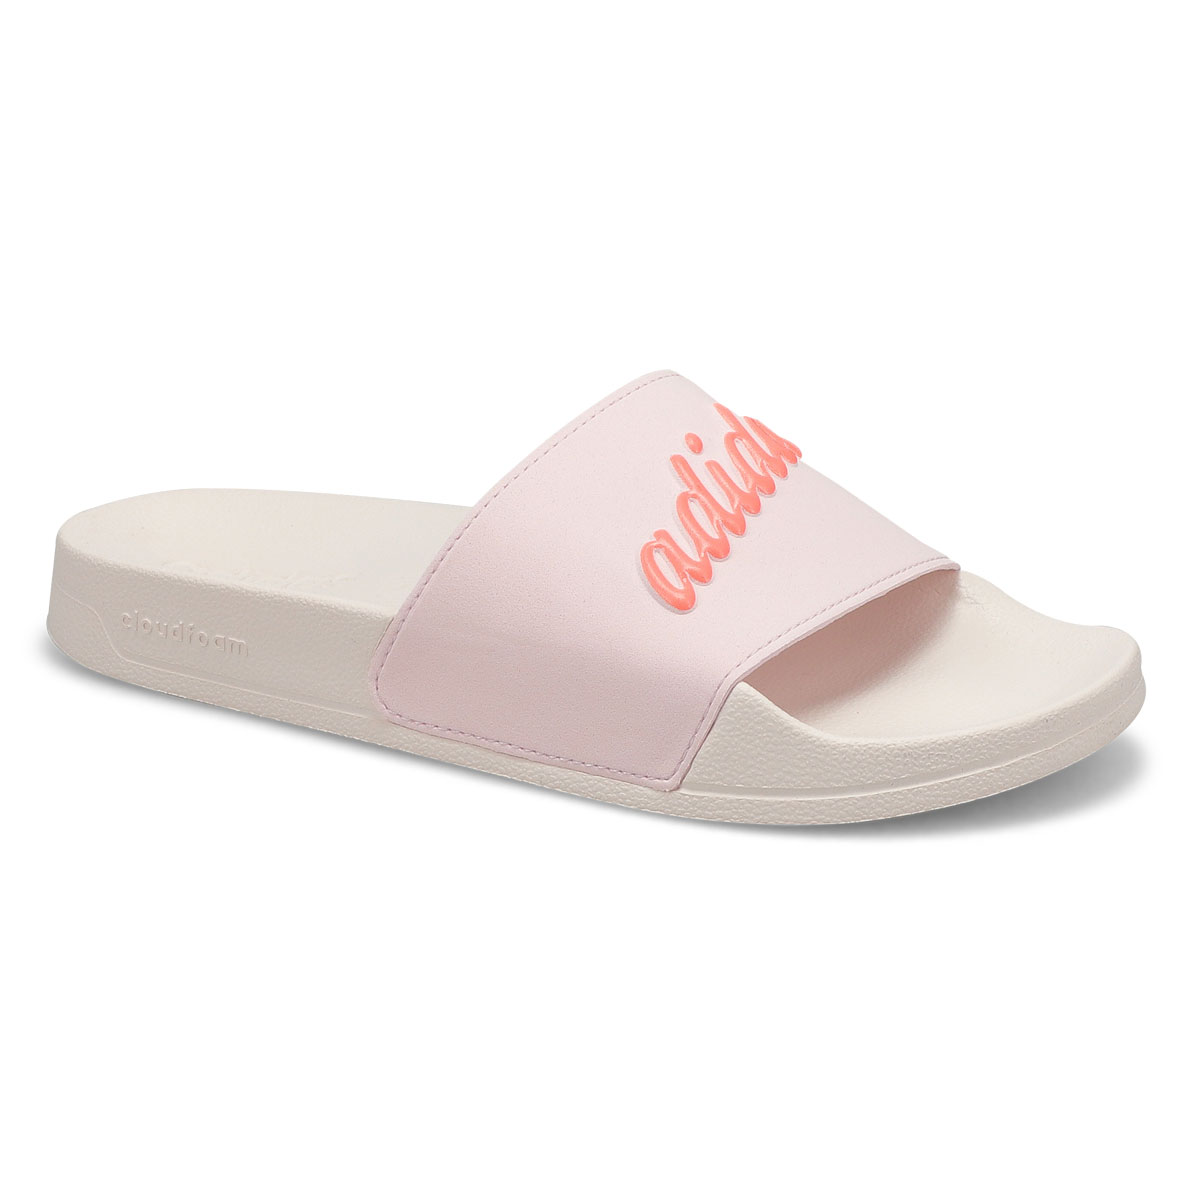 Womens Adilette Shower Slide Sandal - Pink/White